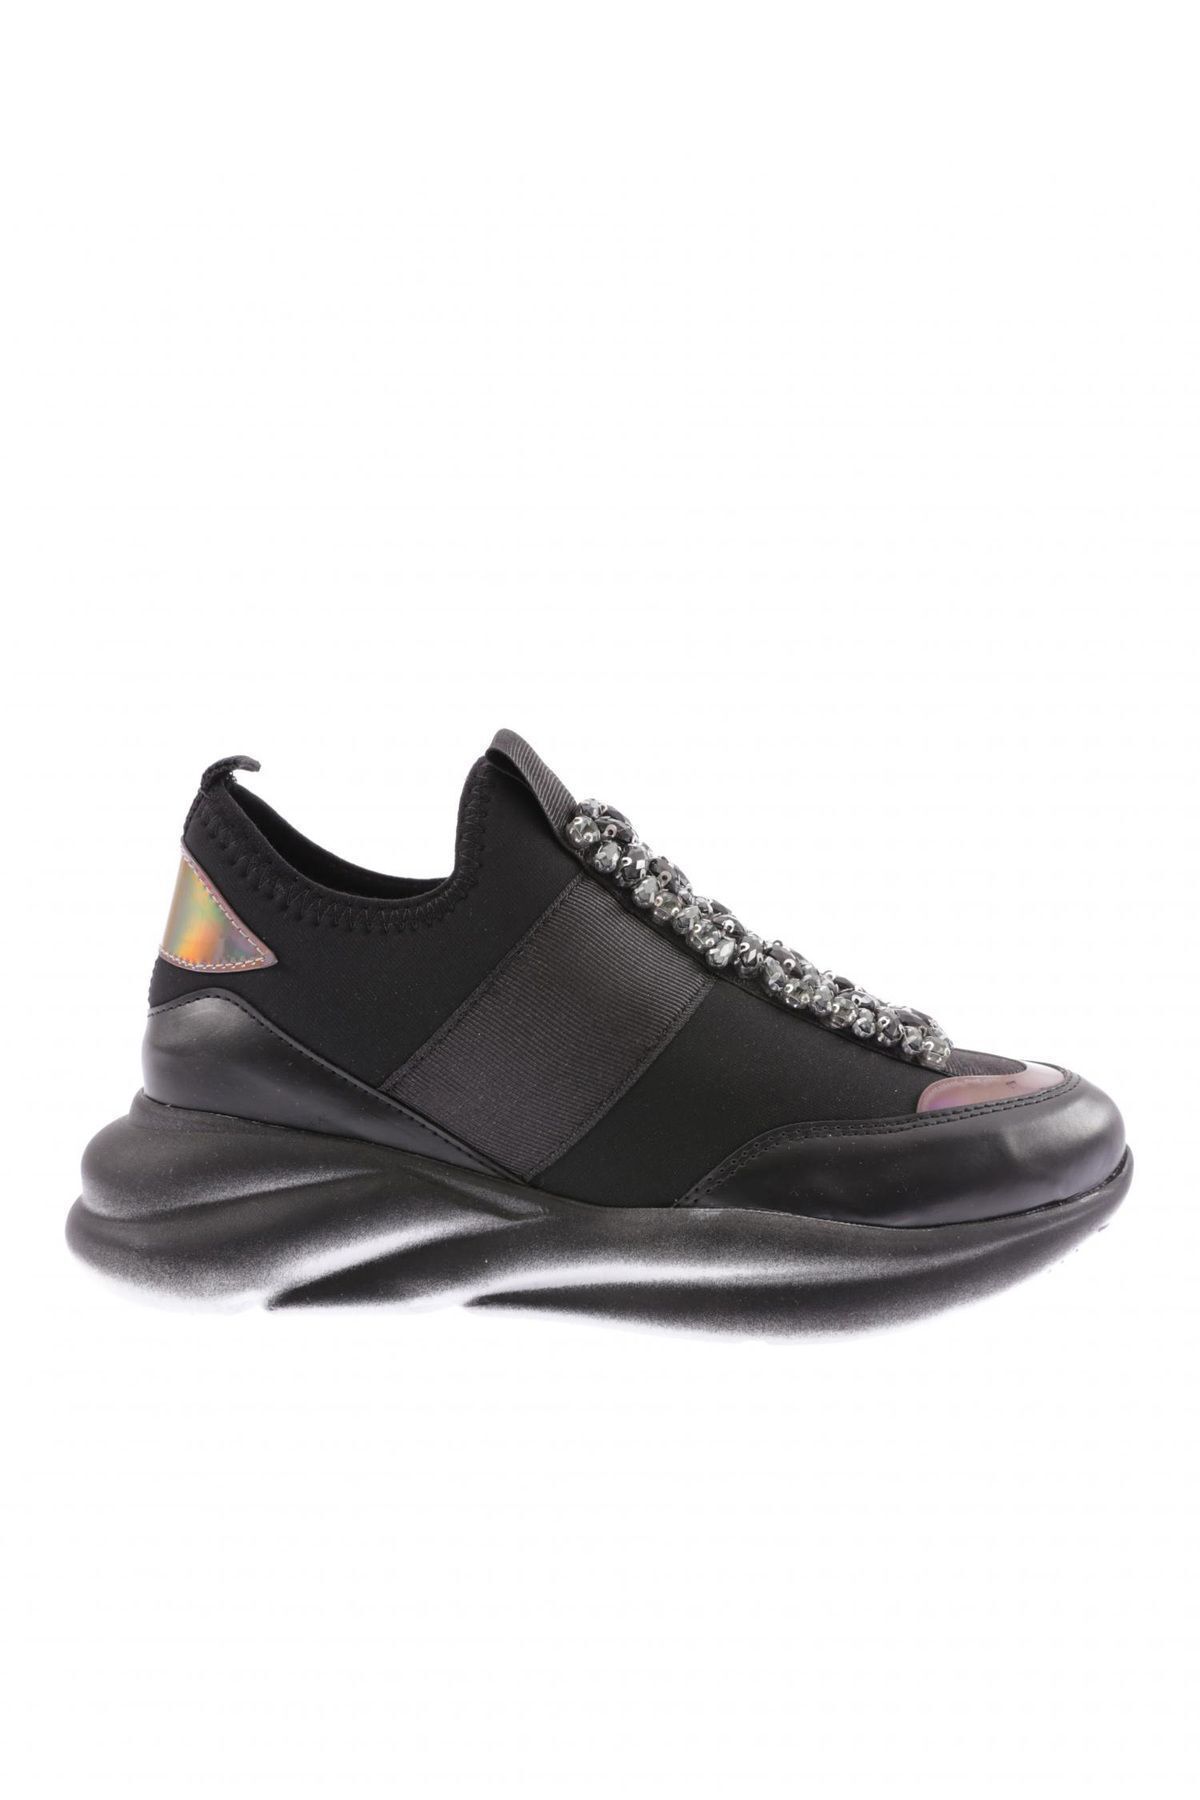 Dgn 222-23y Kadın Strech Detaylı Kristal Taşlı Sneakers Ayakkabı Siyah